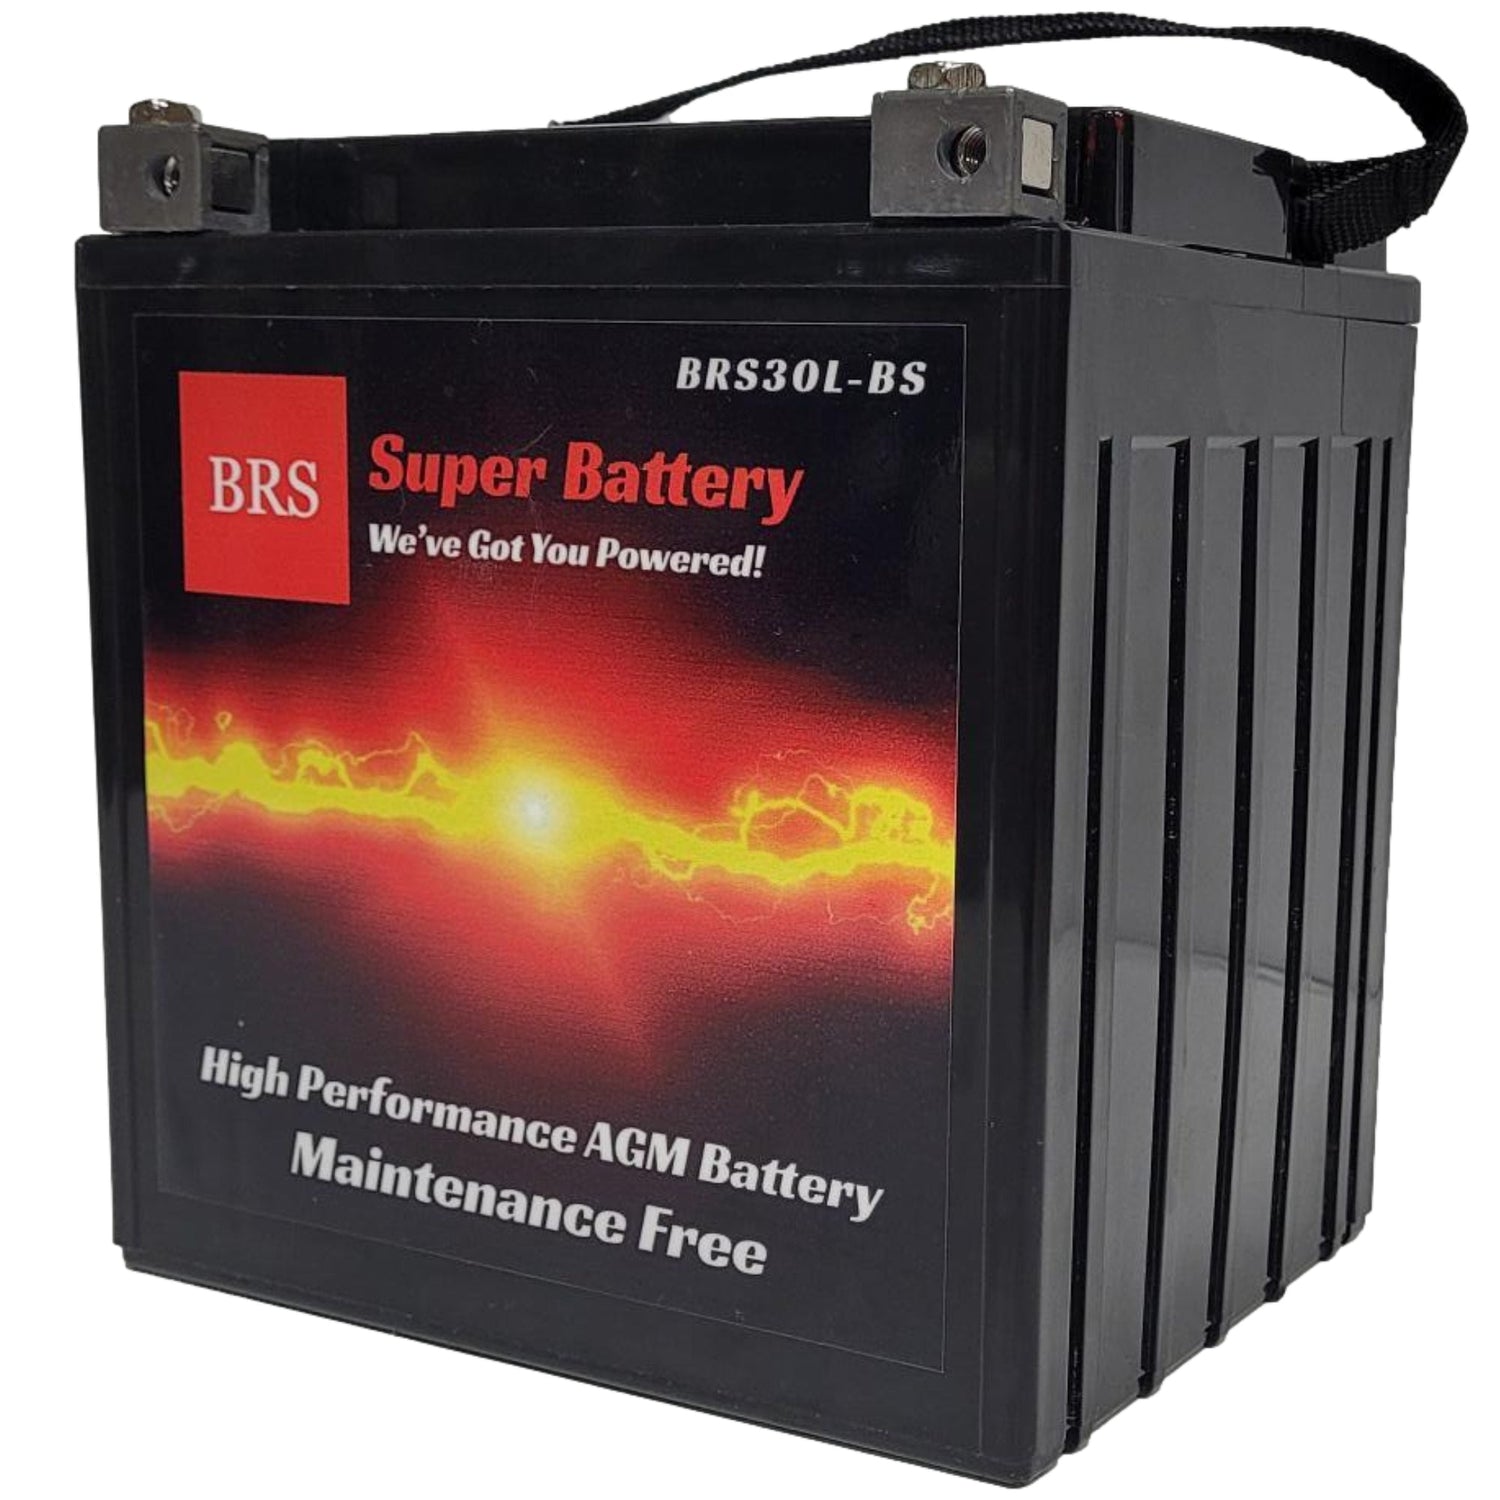 BRS30L-BS 12v 30AH 320CCA 30 Day Warranty - BRS Super Battery